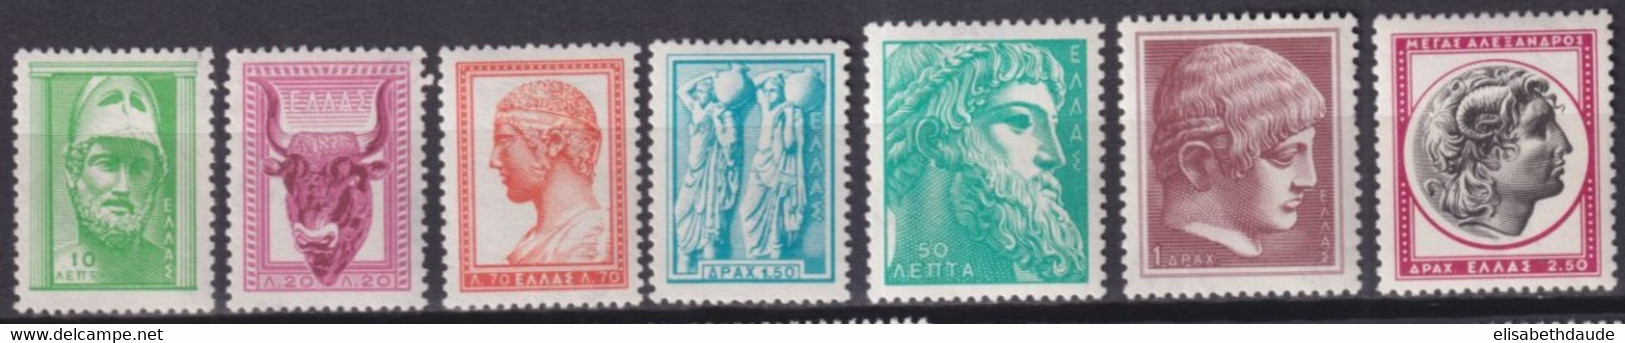 GRECE - 1958 - YVERT N°668/674A ** MNH  - COTE = 45 EUR - Neufs